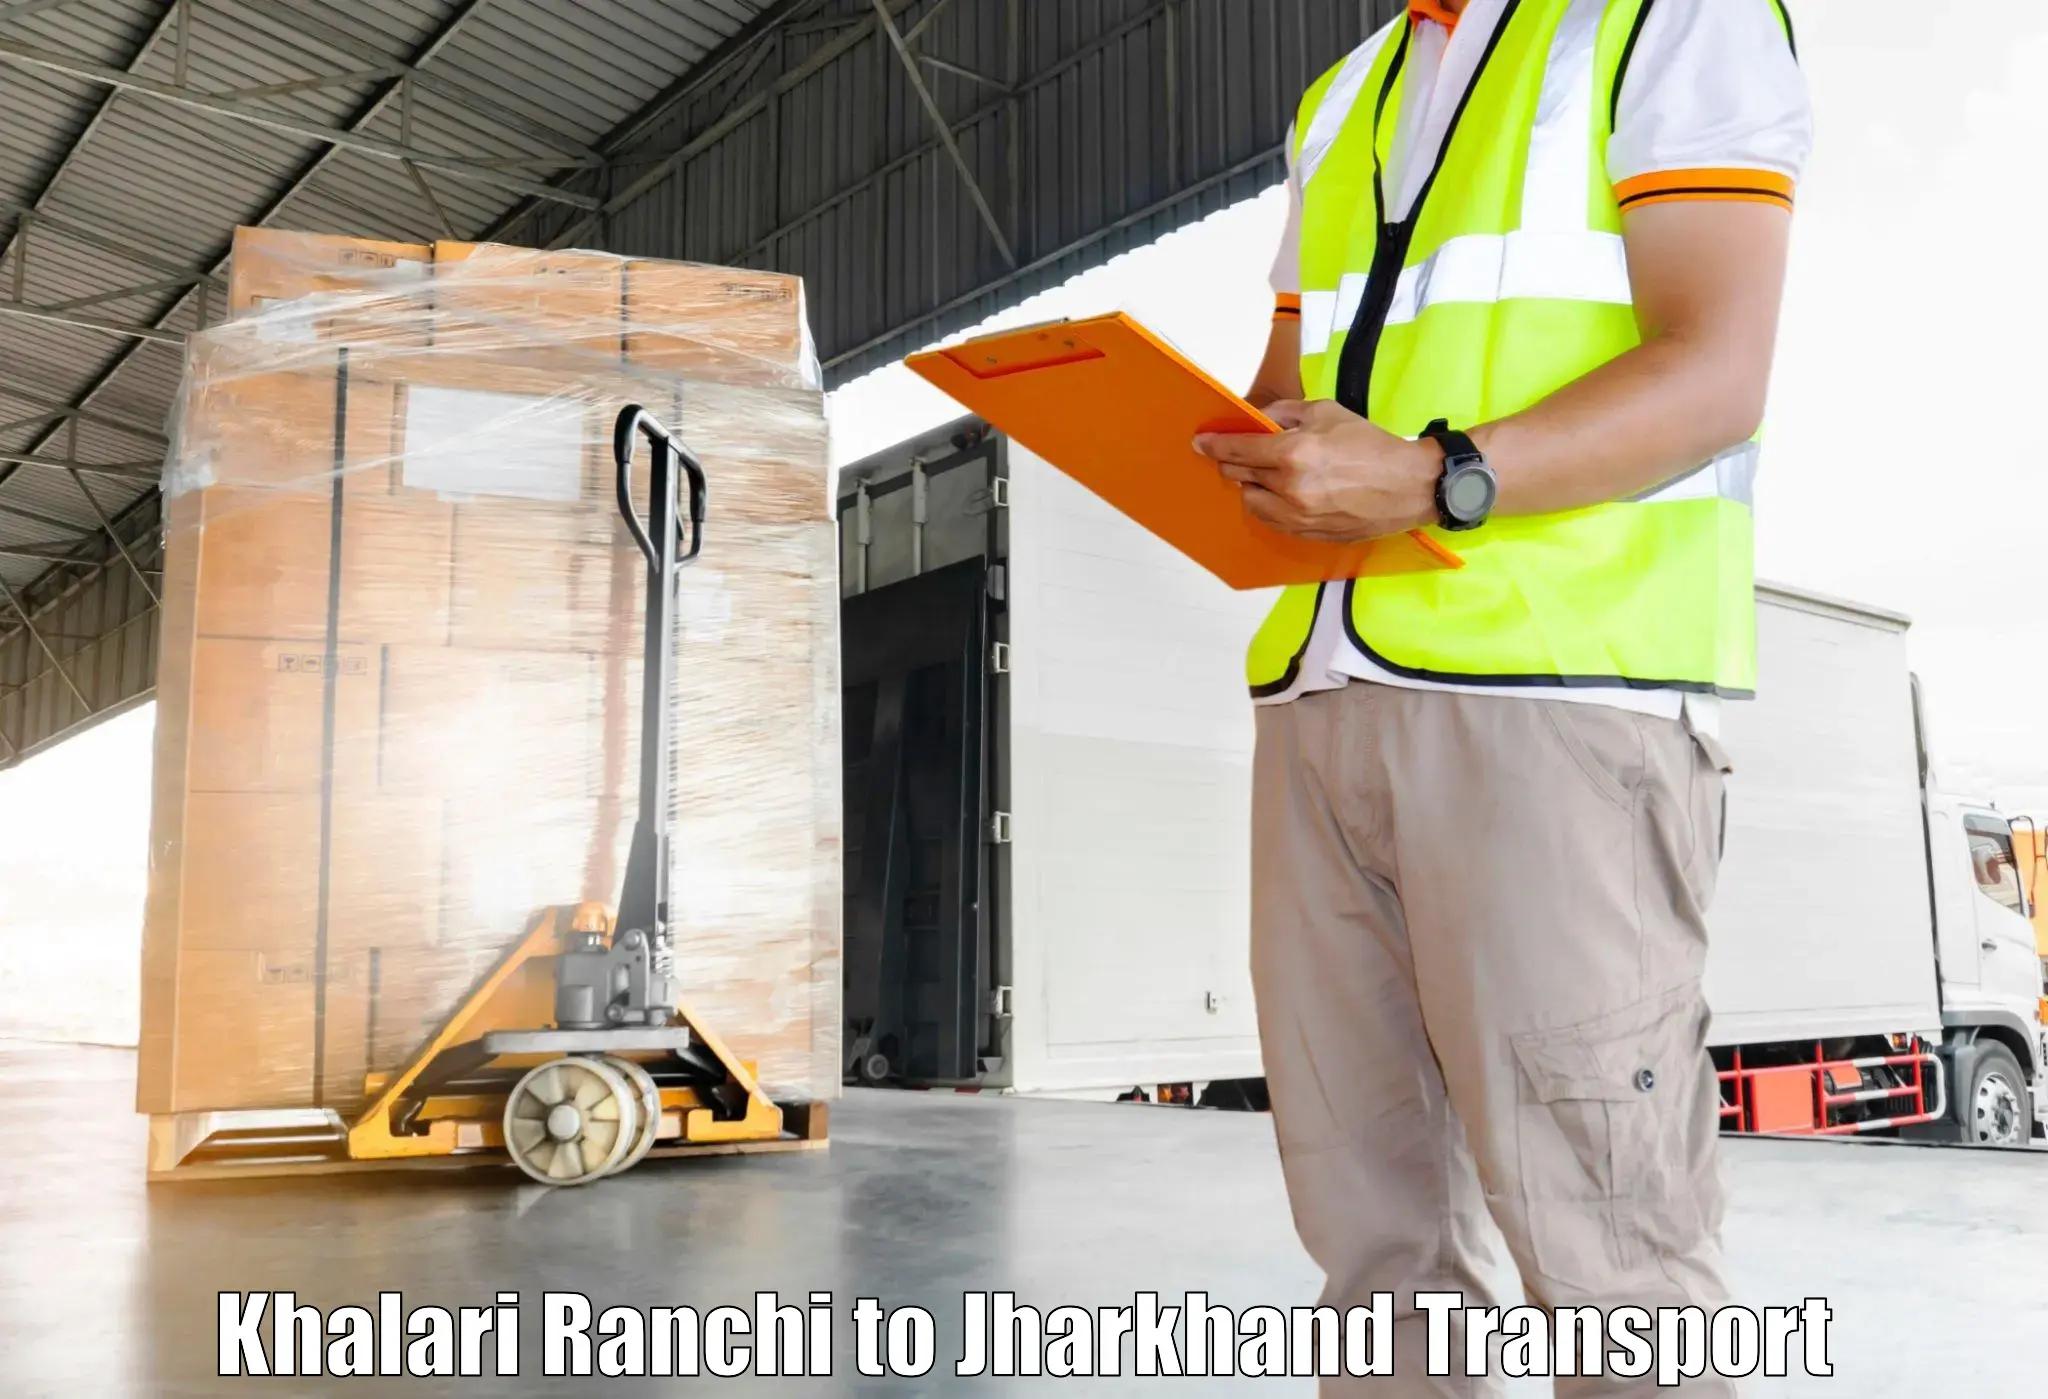 Truck transport companies in India Khalari Ranchi to Godabar Chatra